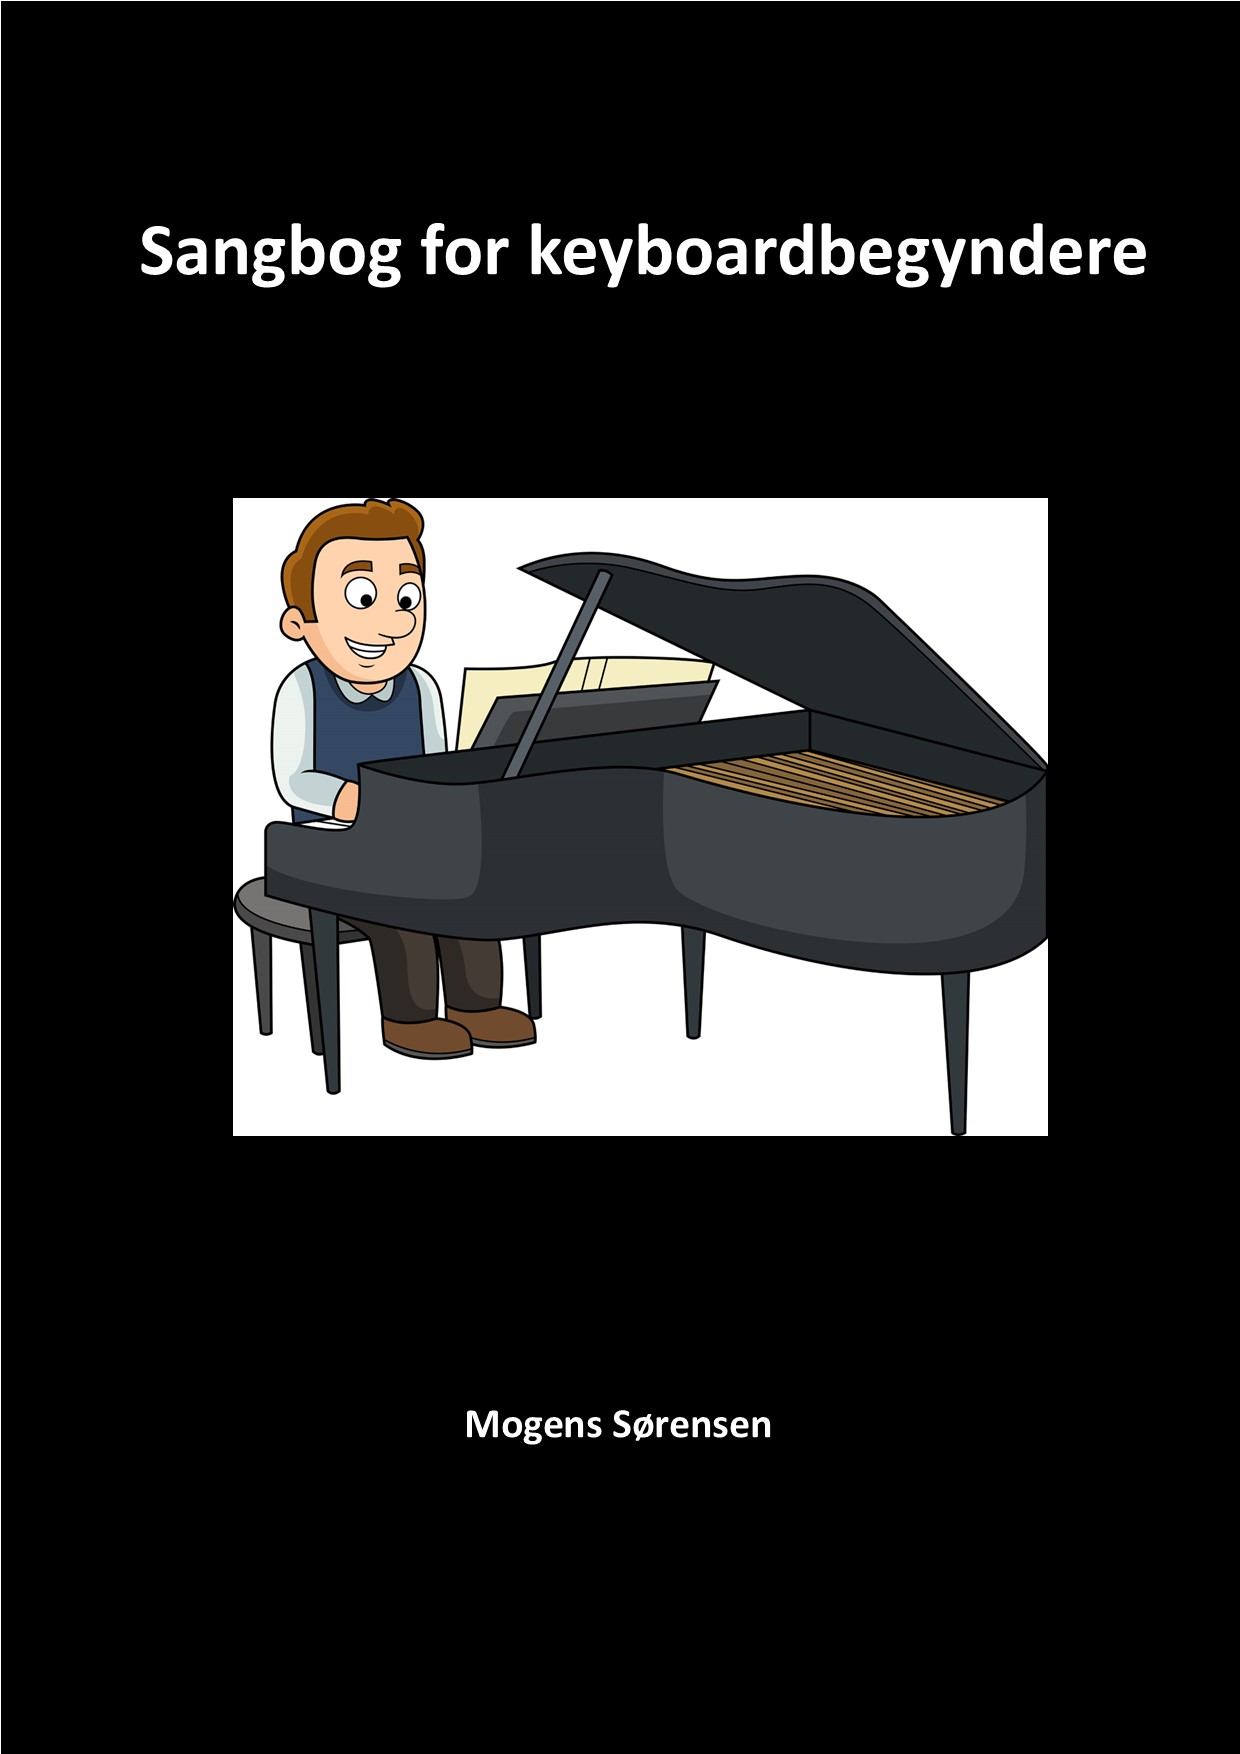 Forsidebillede til Sangbog for keyboardbegyndere